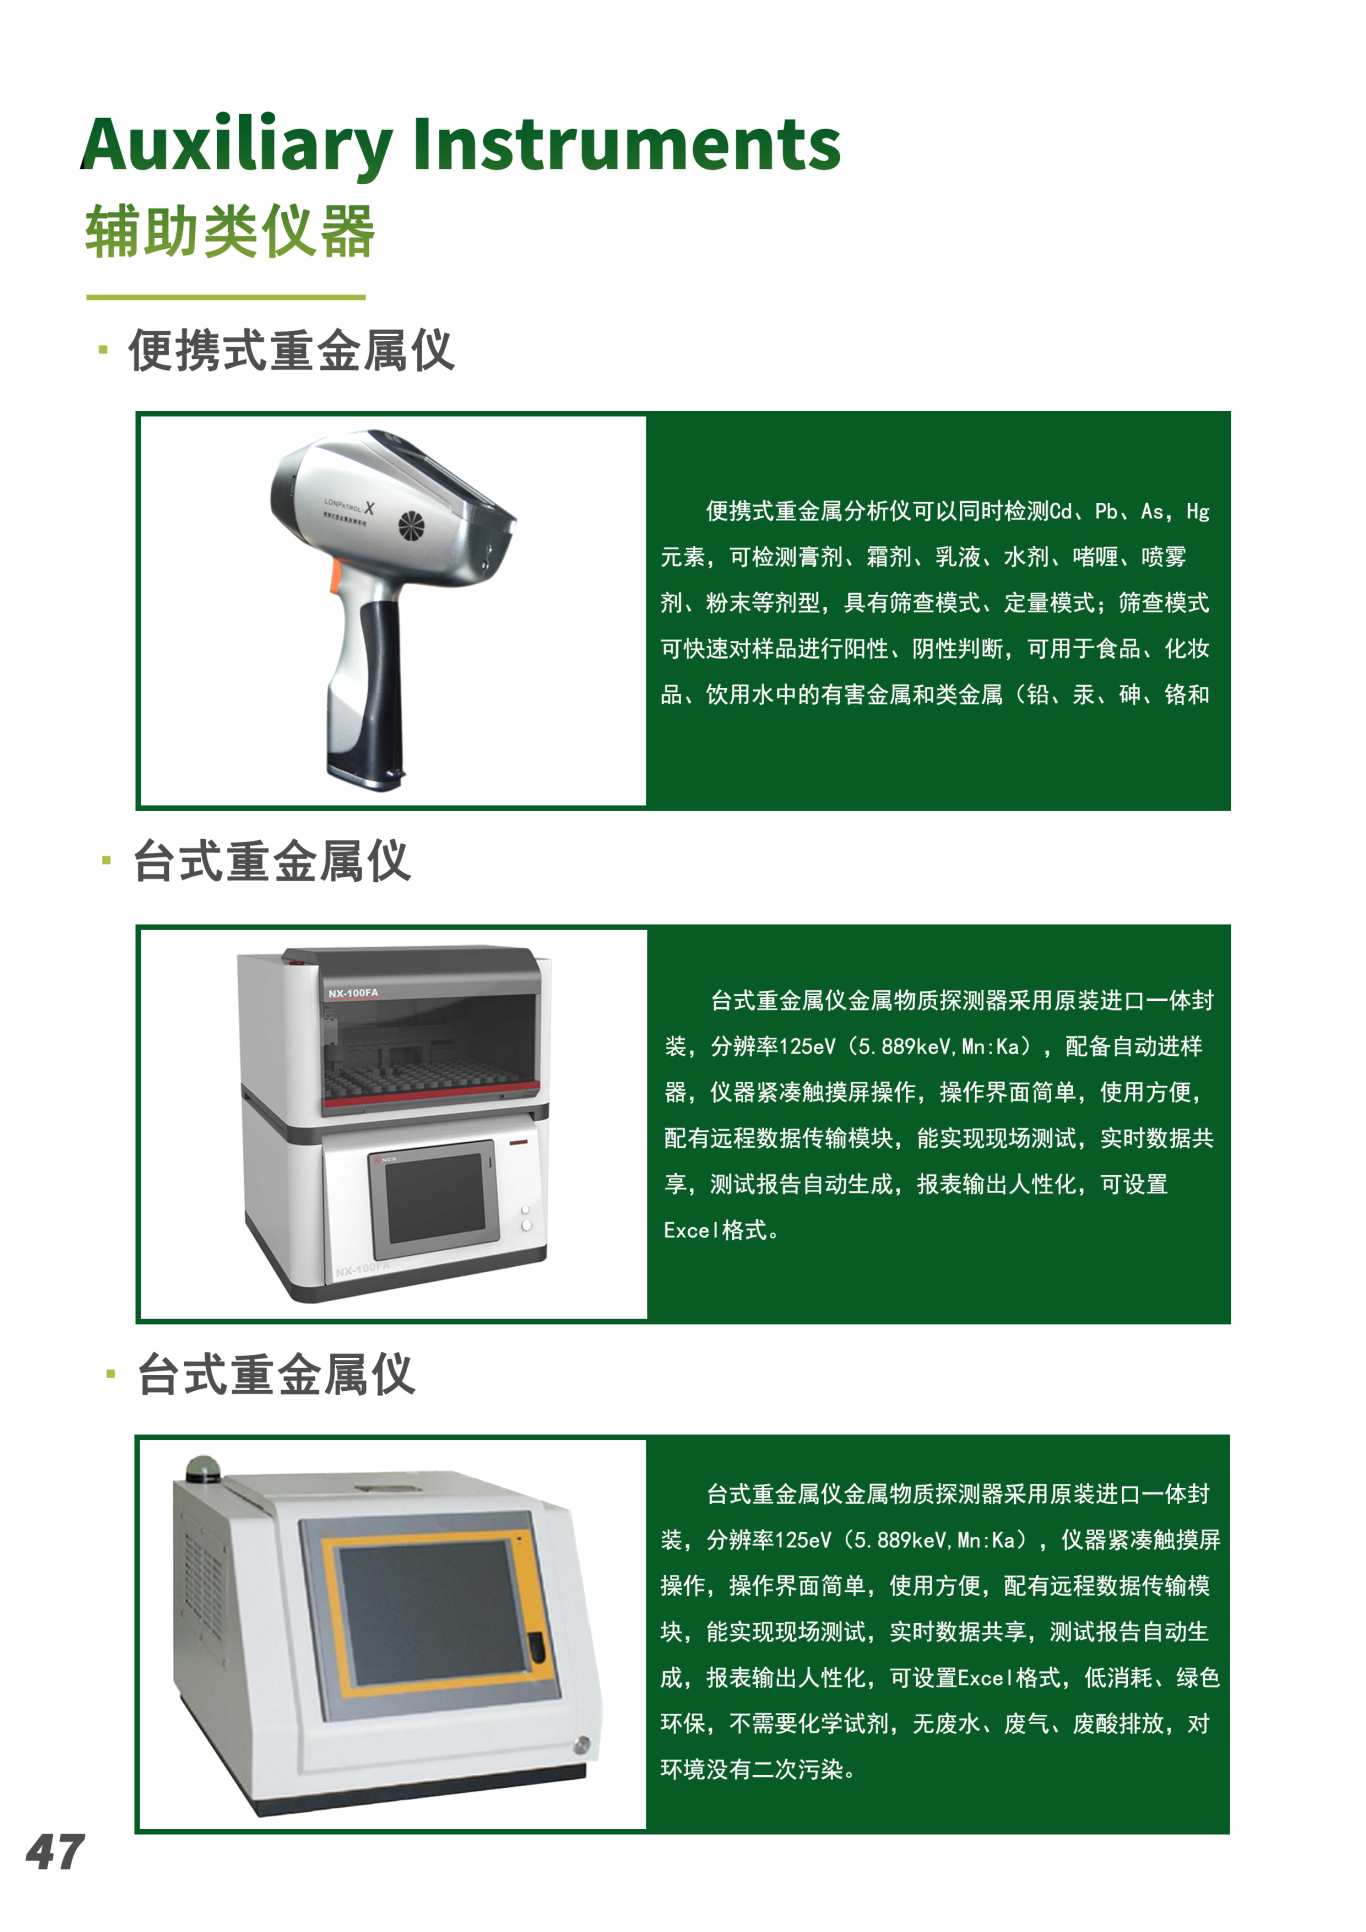 北京艾旗斯德科技有限公司仪器介绍彩页图6